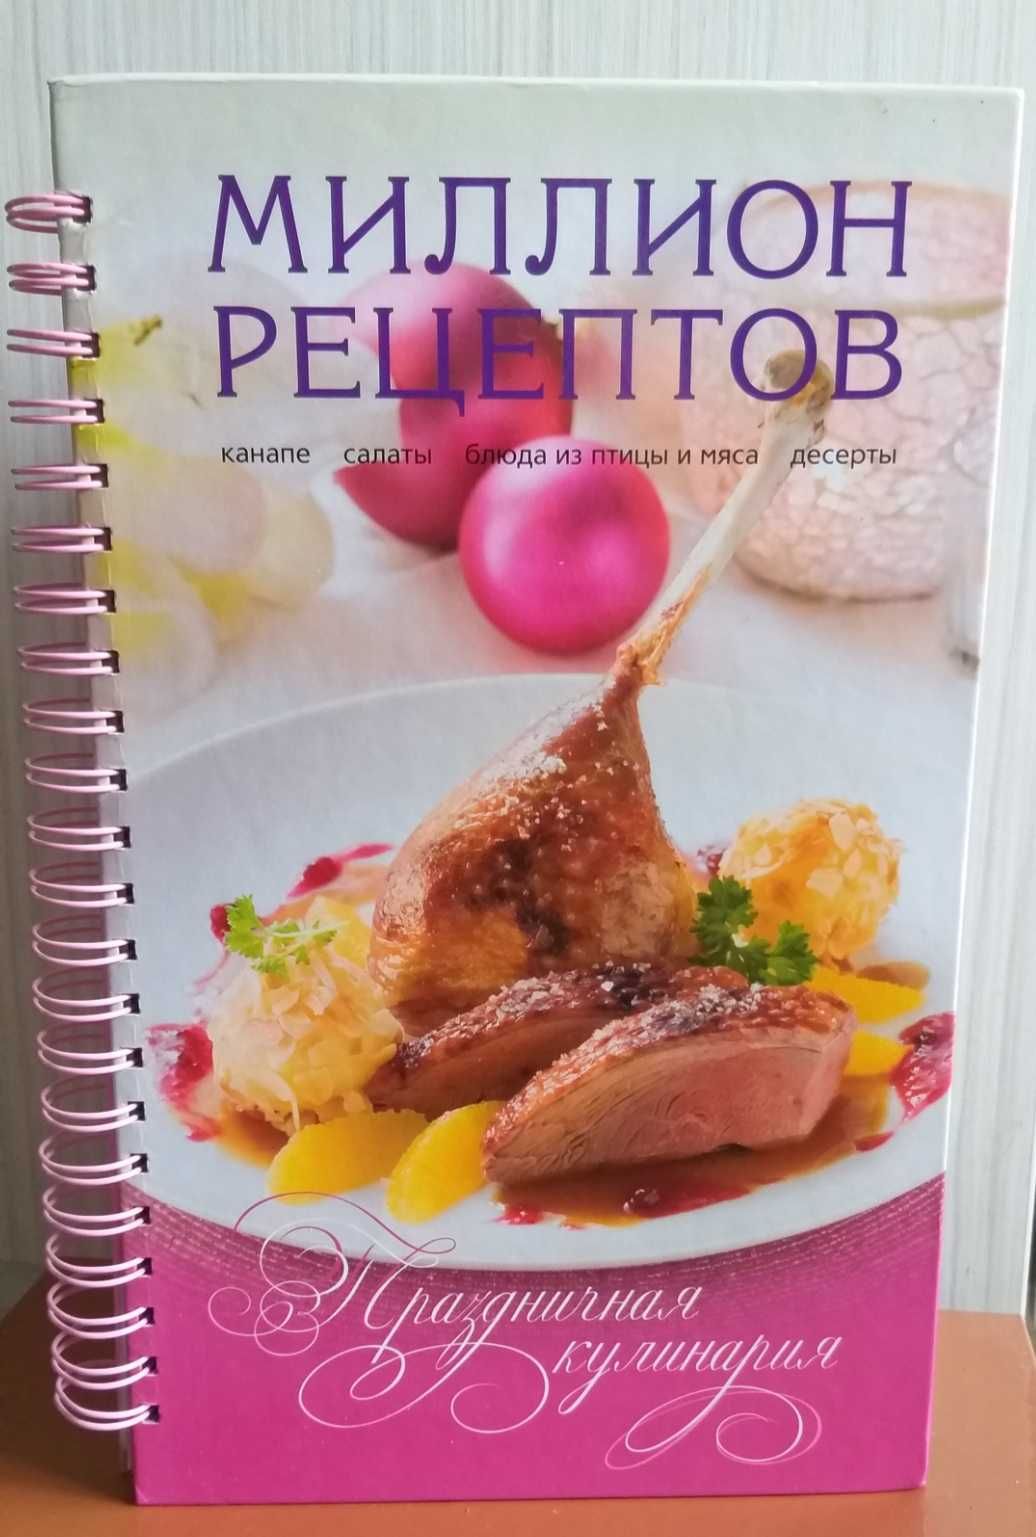 Кулинарная книга. «Миллион рецептов. Праздничная кулинария».